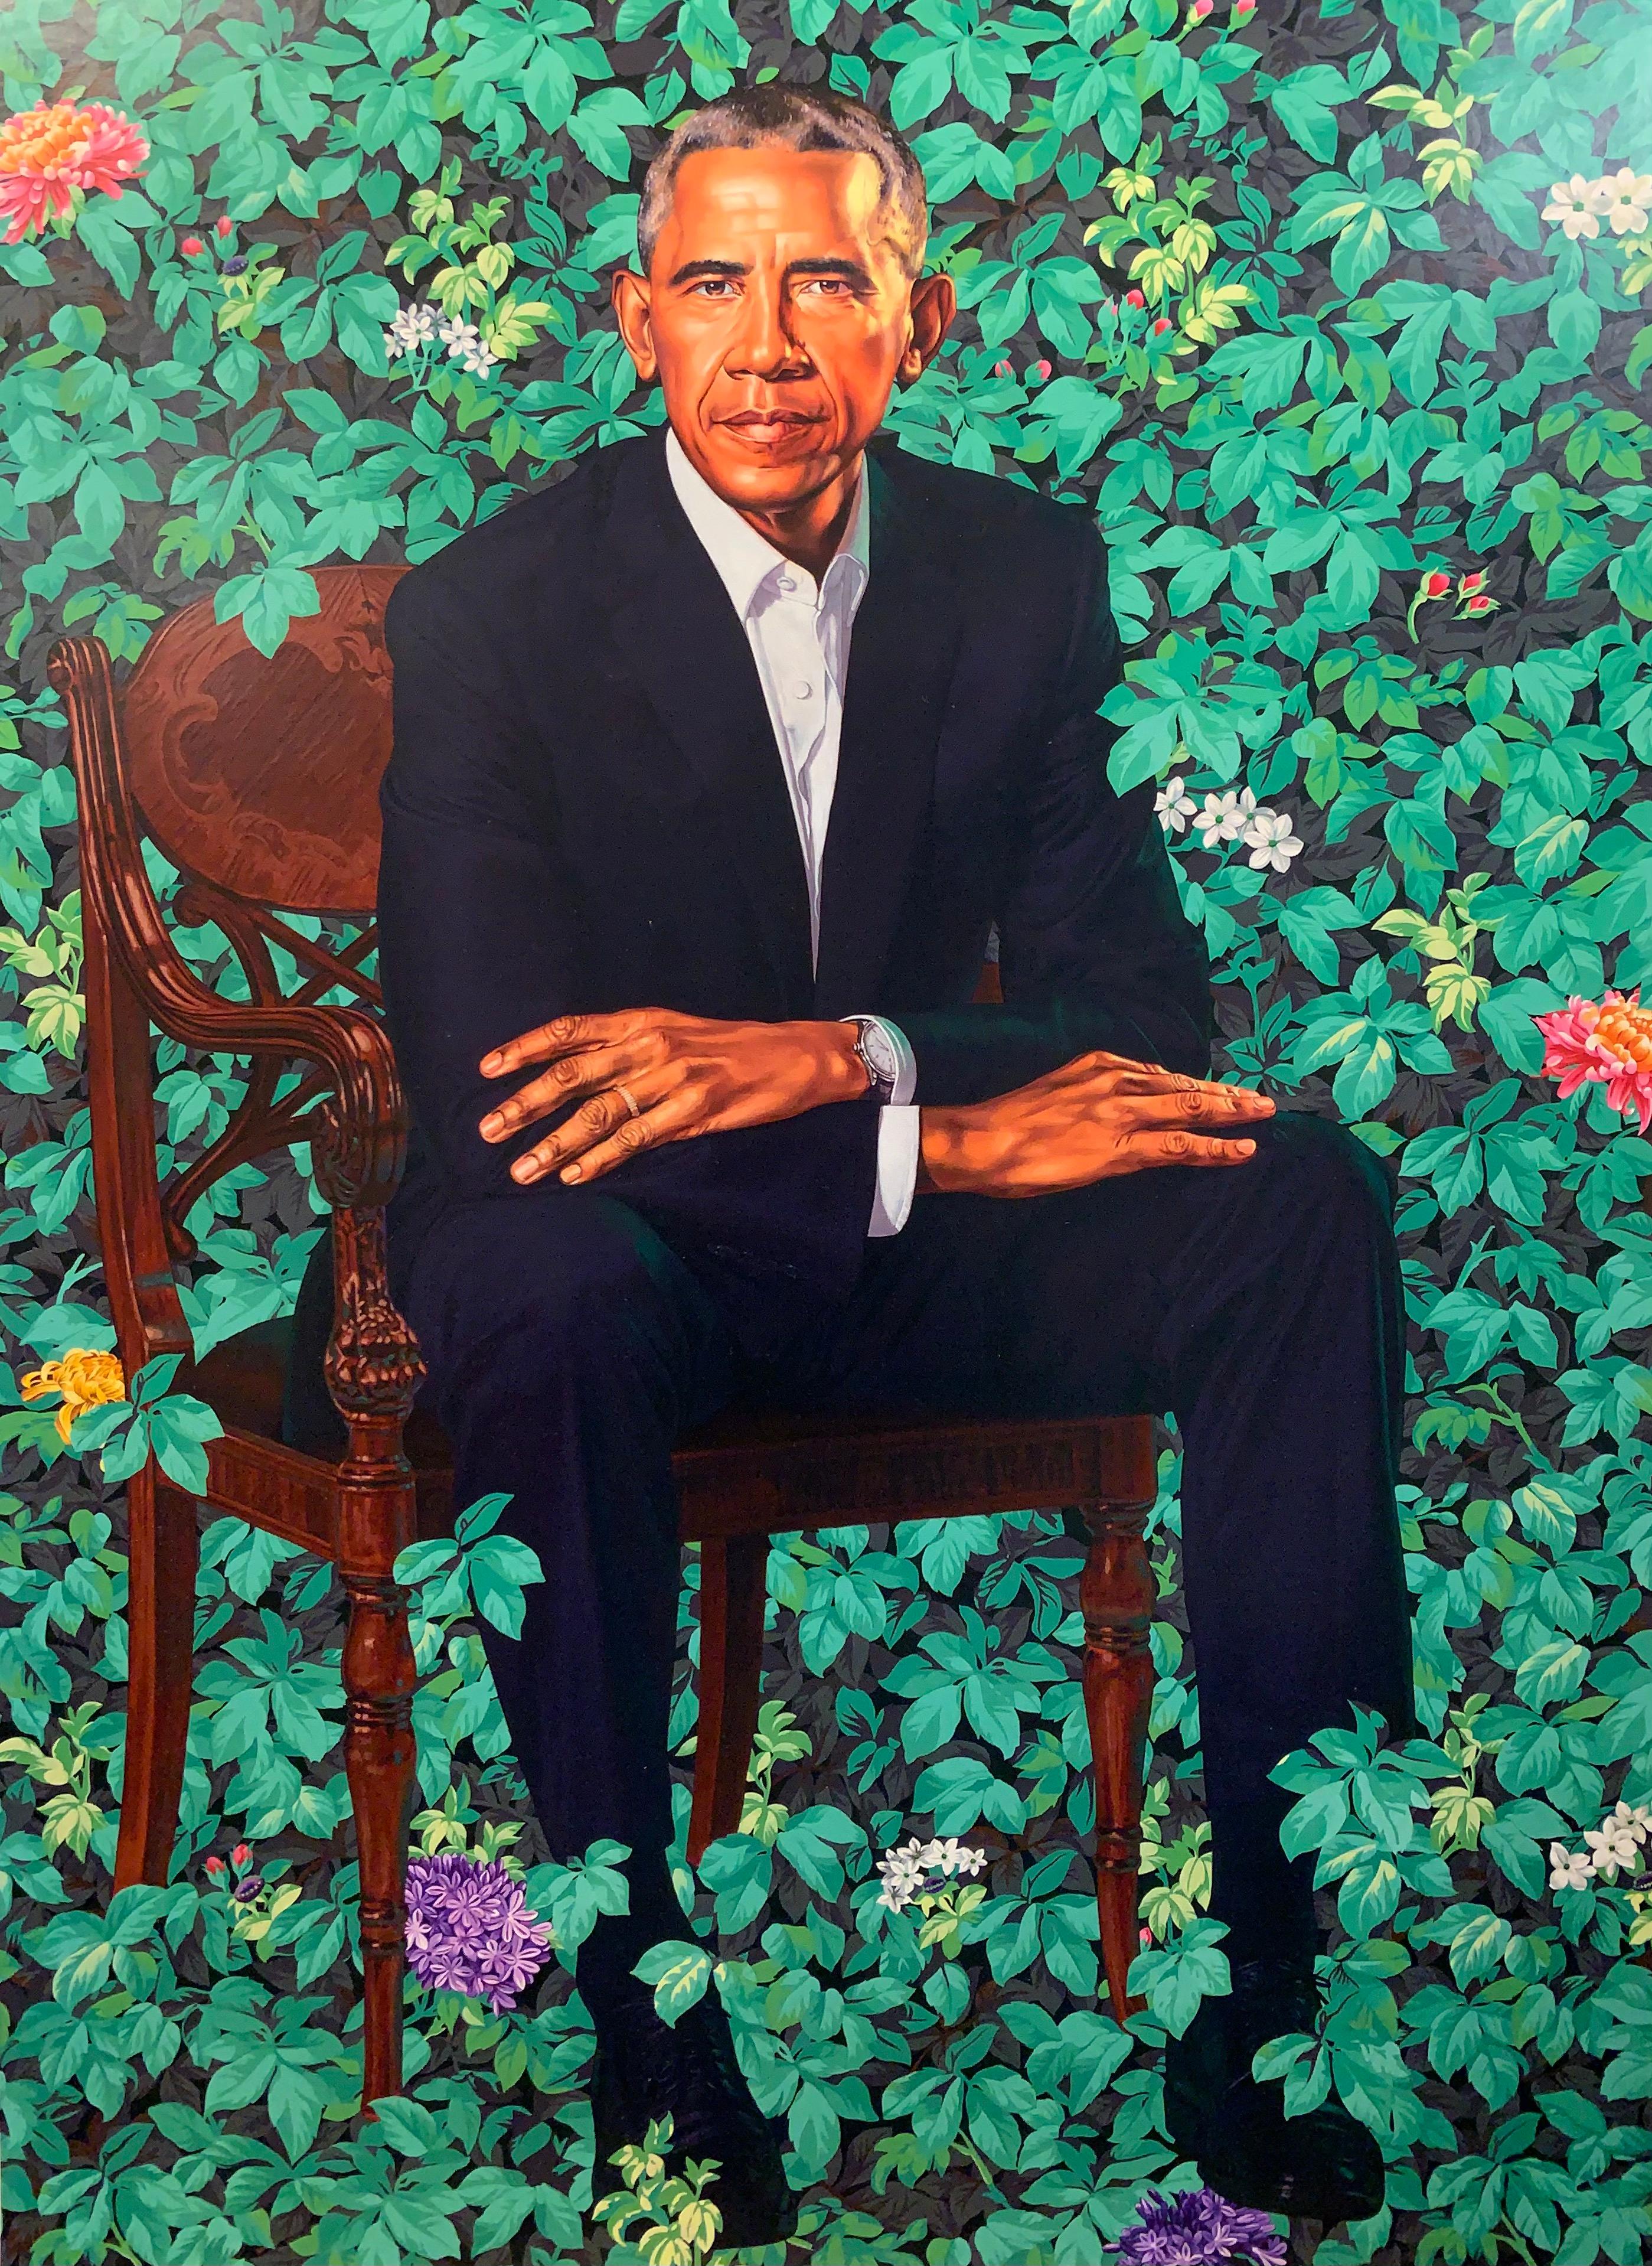 Barack Obama White House Portrait